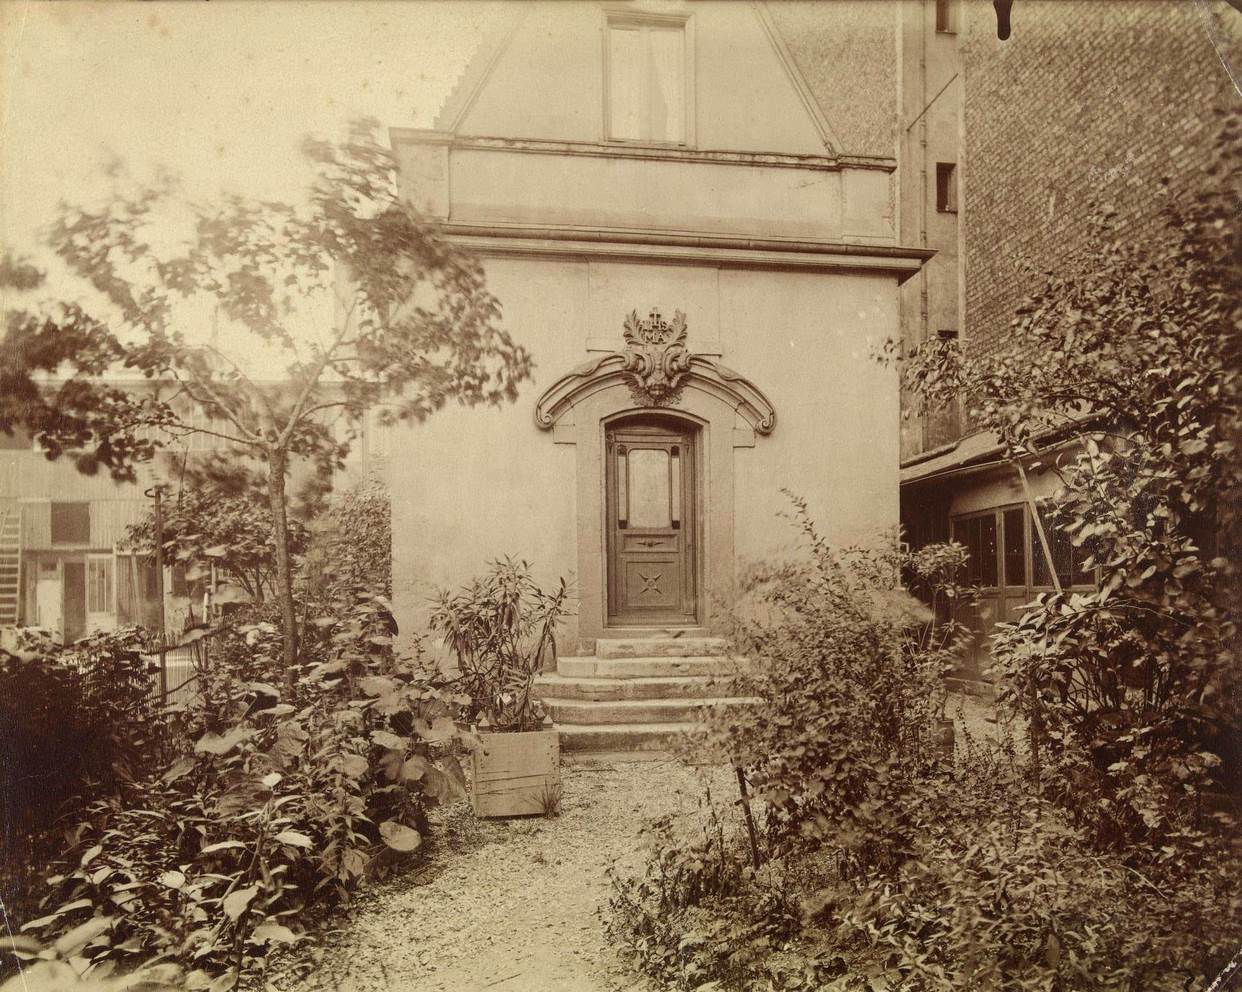 House chapel of Mlle Lavaliere, Rue Nicole, Paris, Oratoire de M.elle Lavaliere, 1890